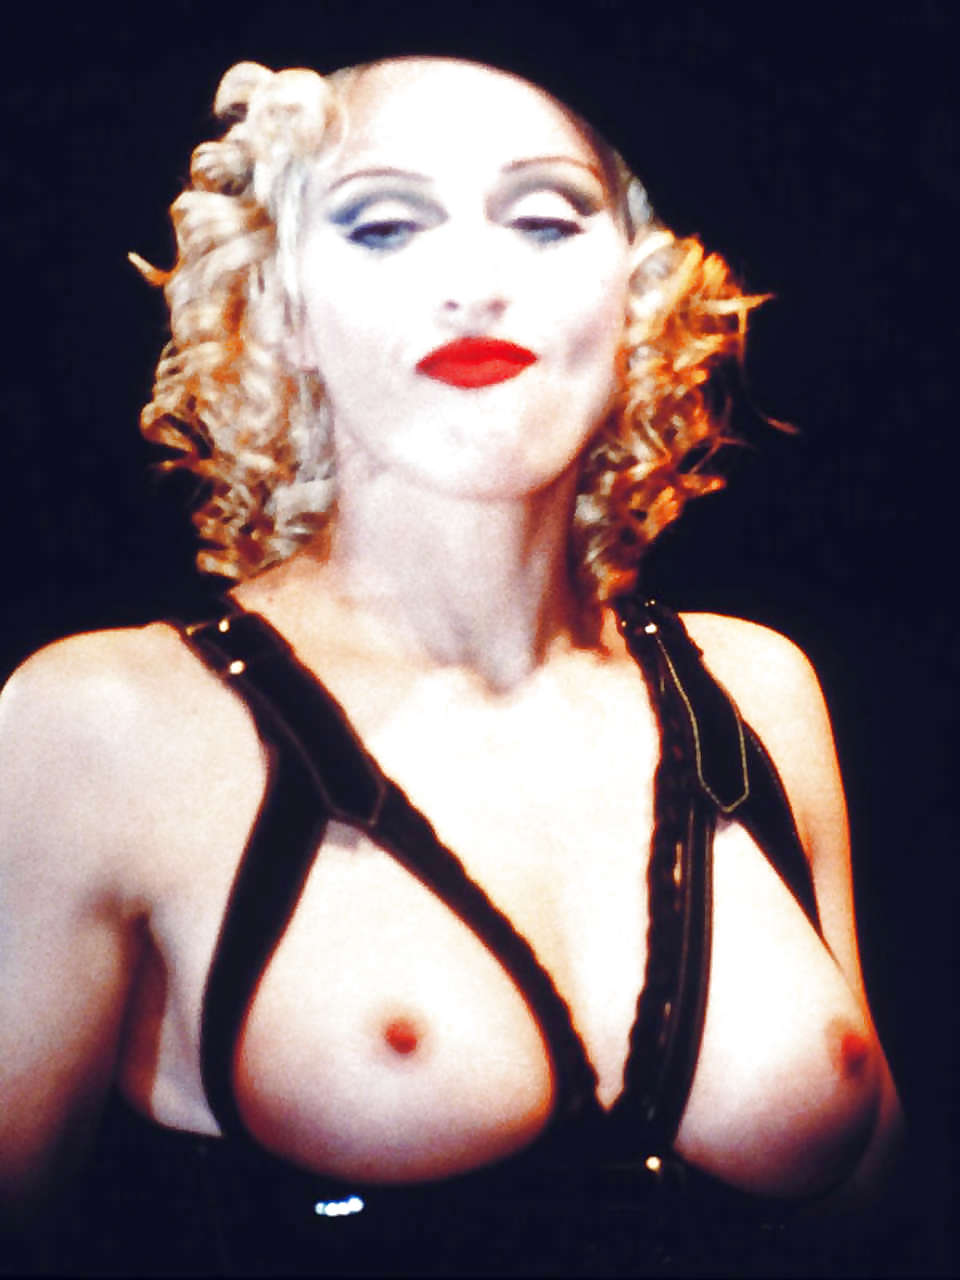 Top20 Celebs Ich Will Ficken # 13: Madonna #13005400